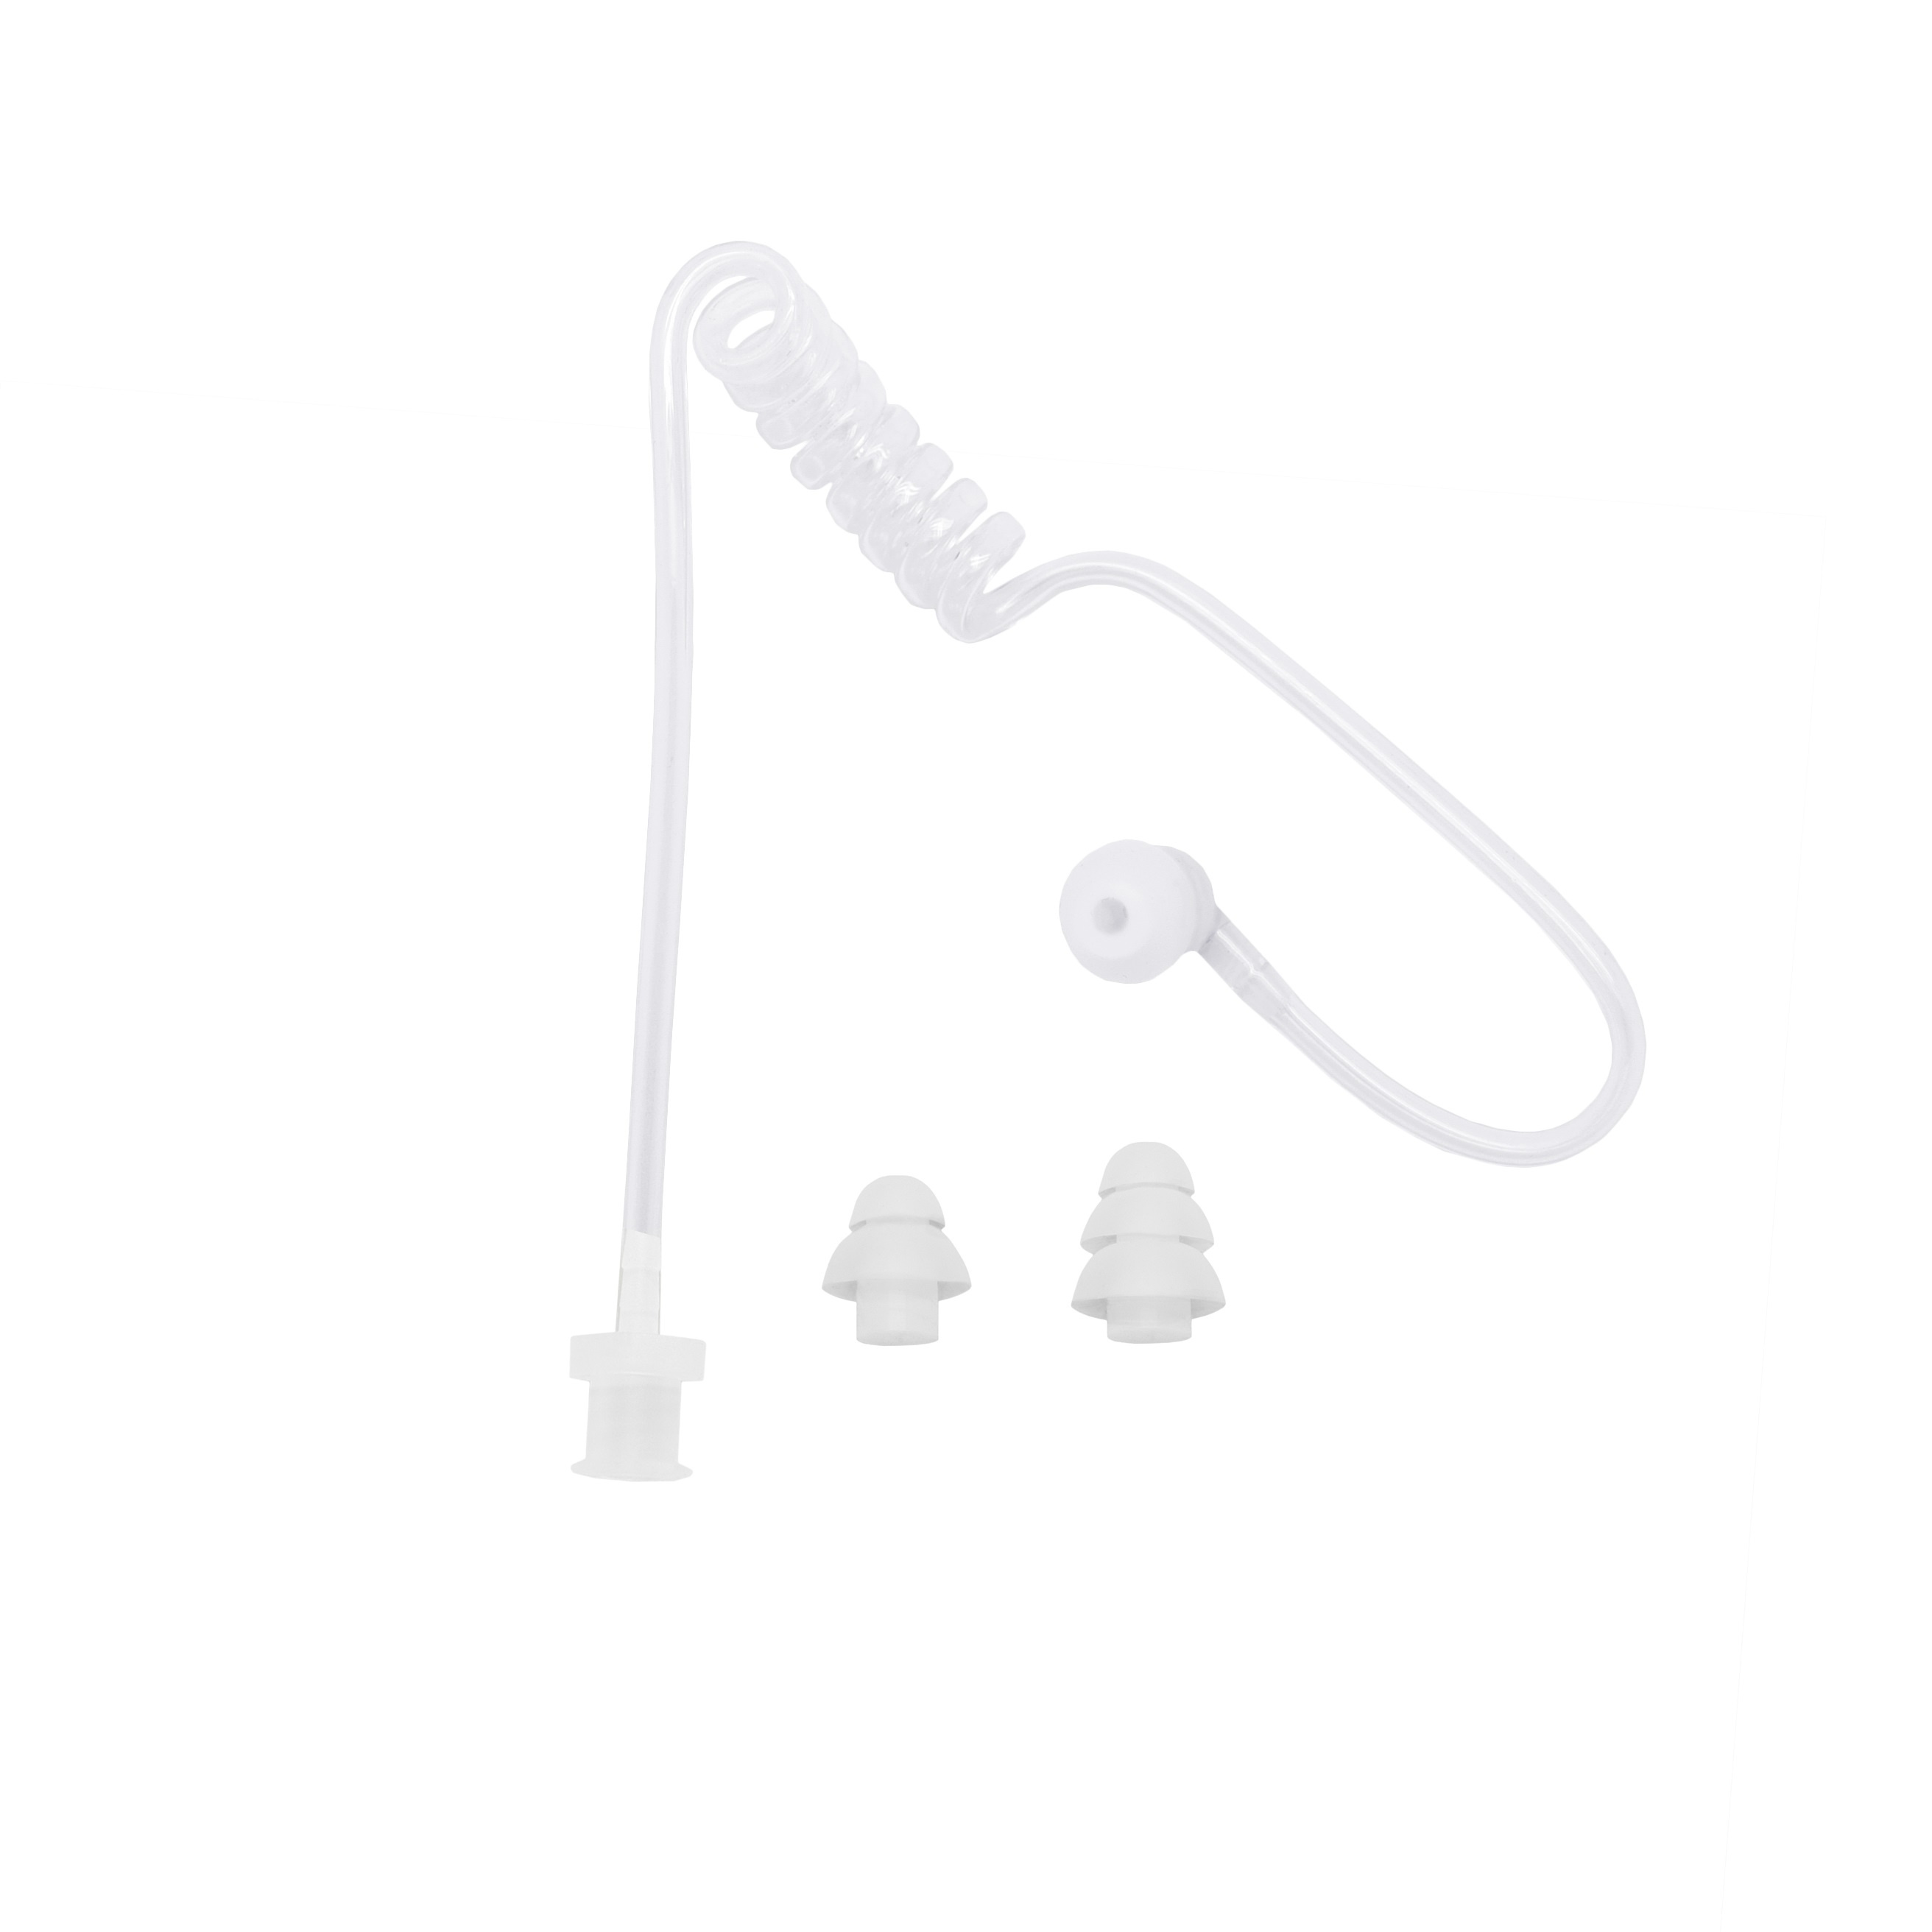 Acoustic tube earphone "lock type" GEP-TUBE-SET-W4